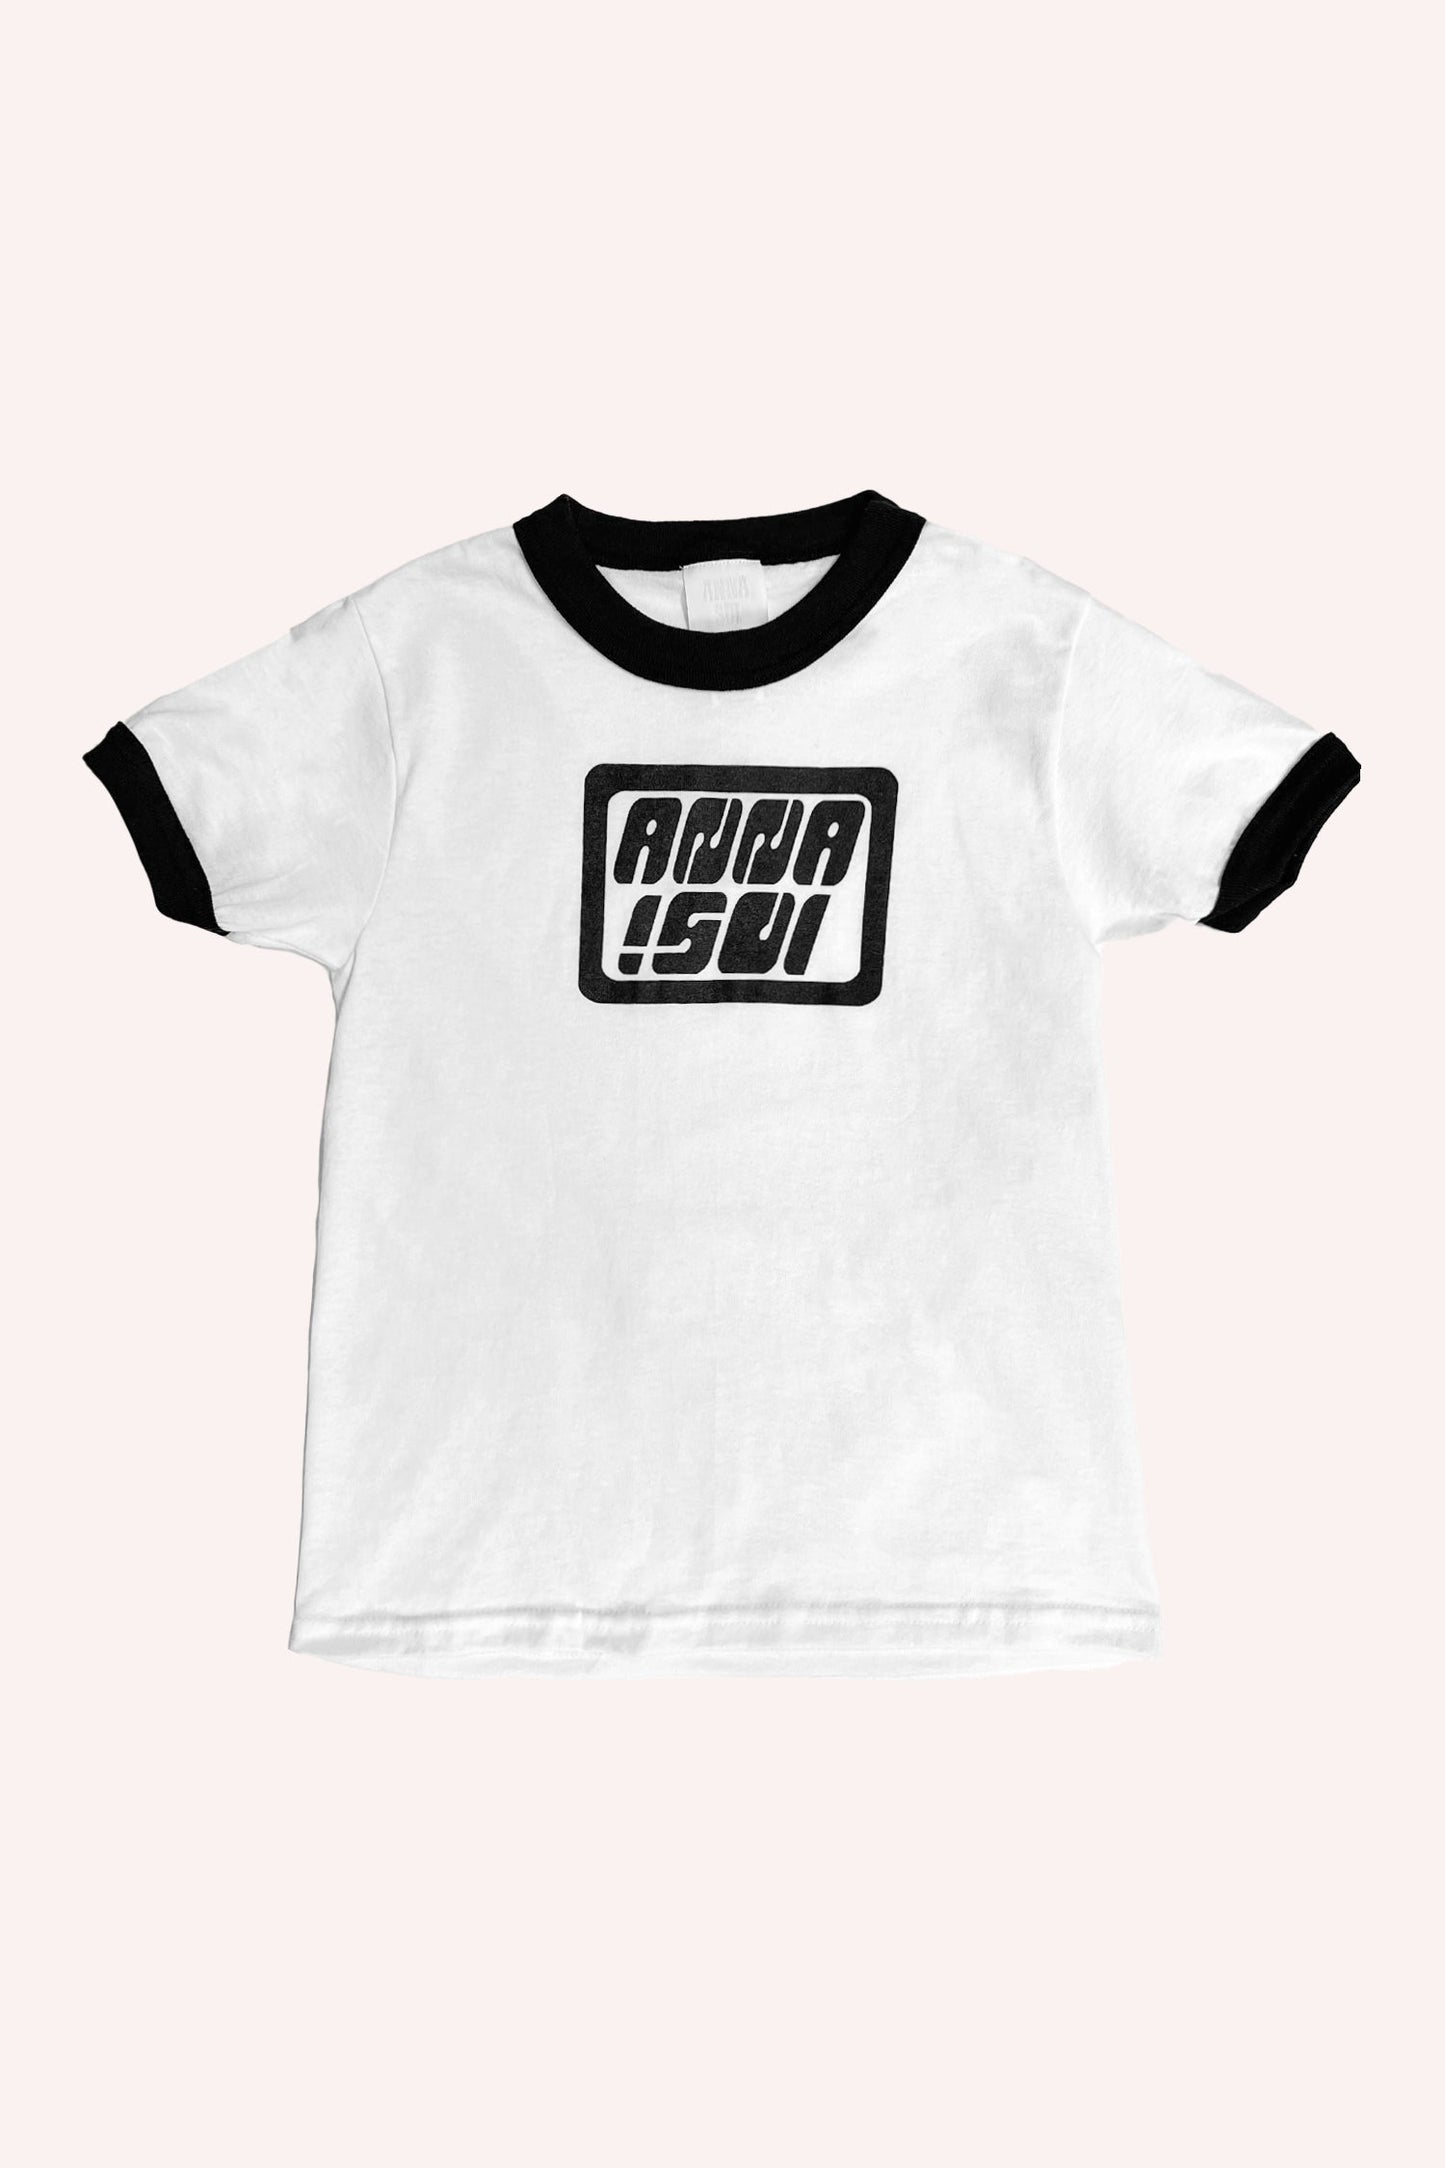 Anna Sui Ringer Tee nera, t-shirt bianca con bordi neri sul collo e sul braccio, logo Anna Sui sul davanti